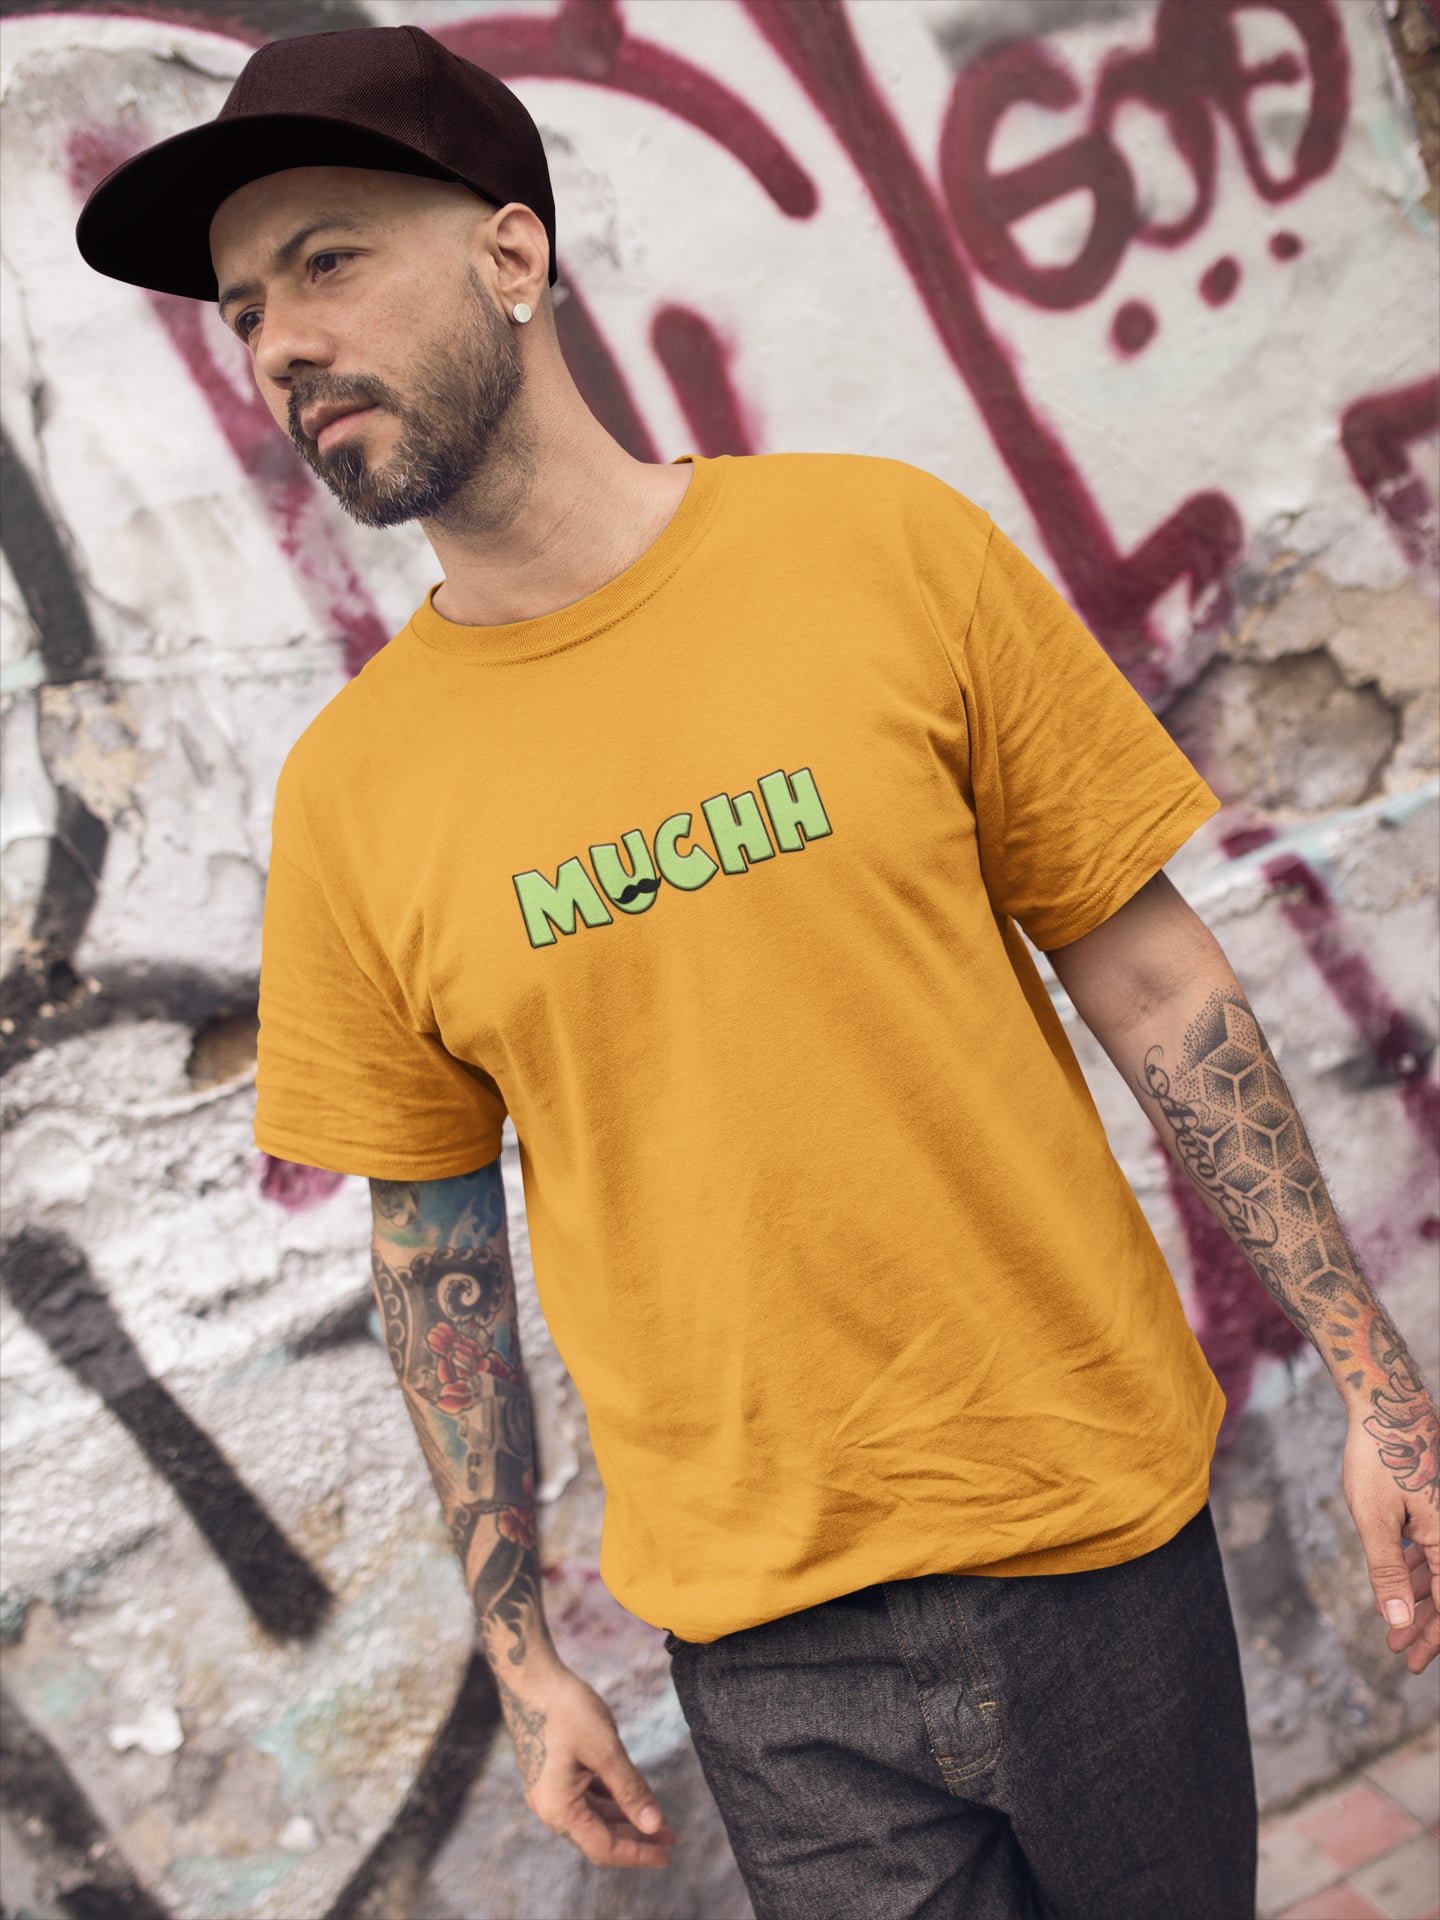 Muchh Summer T-shirt for Men